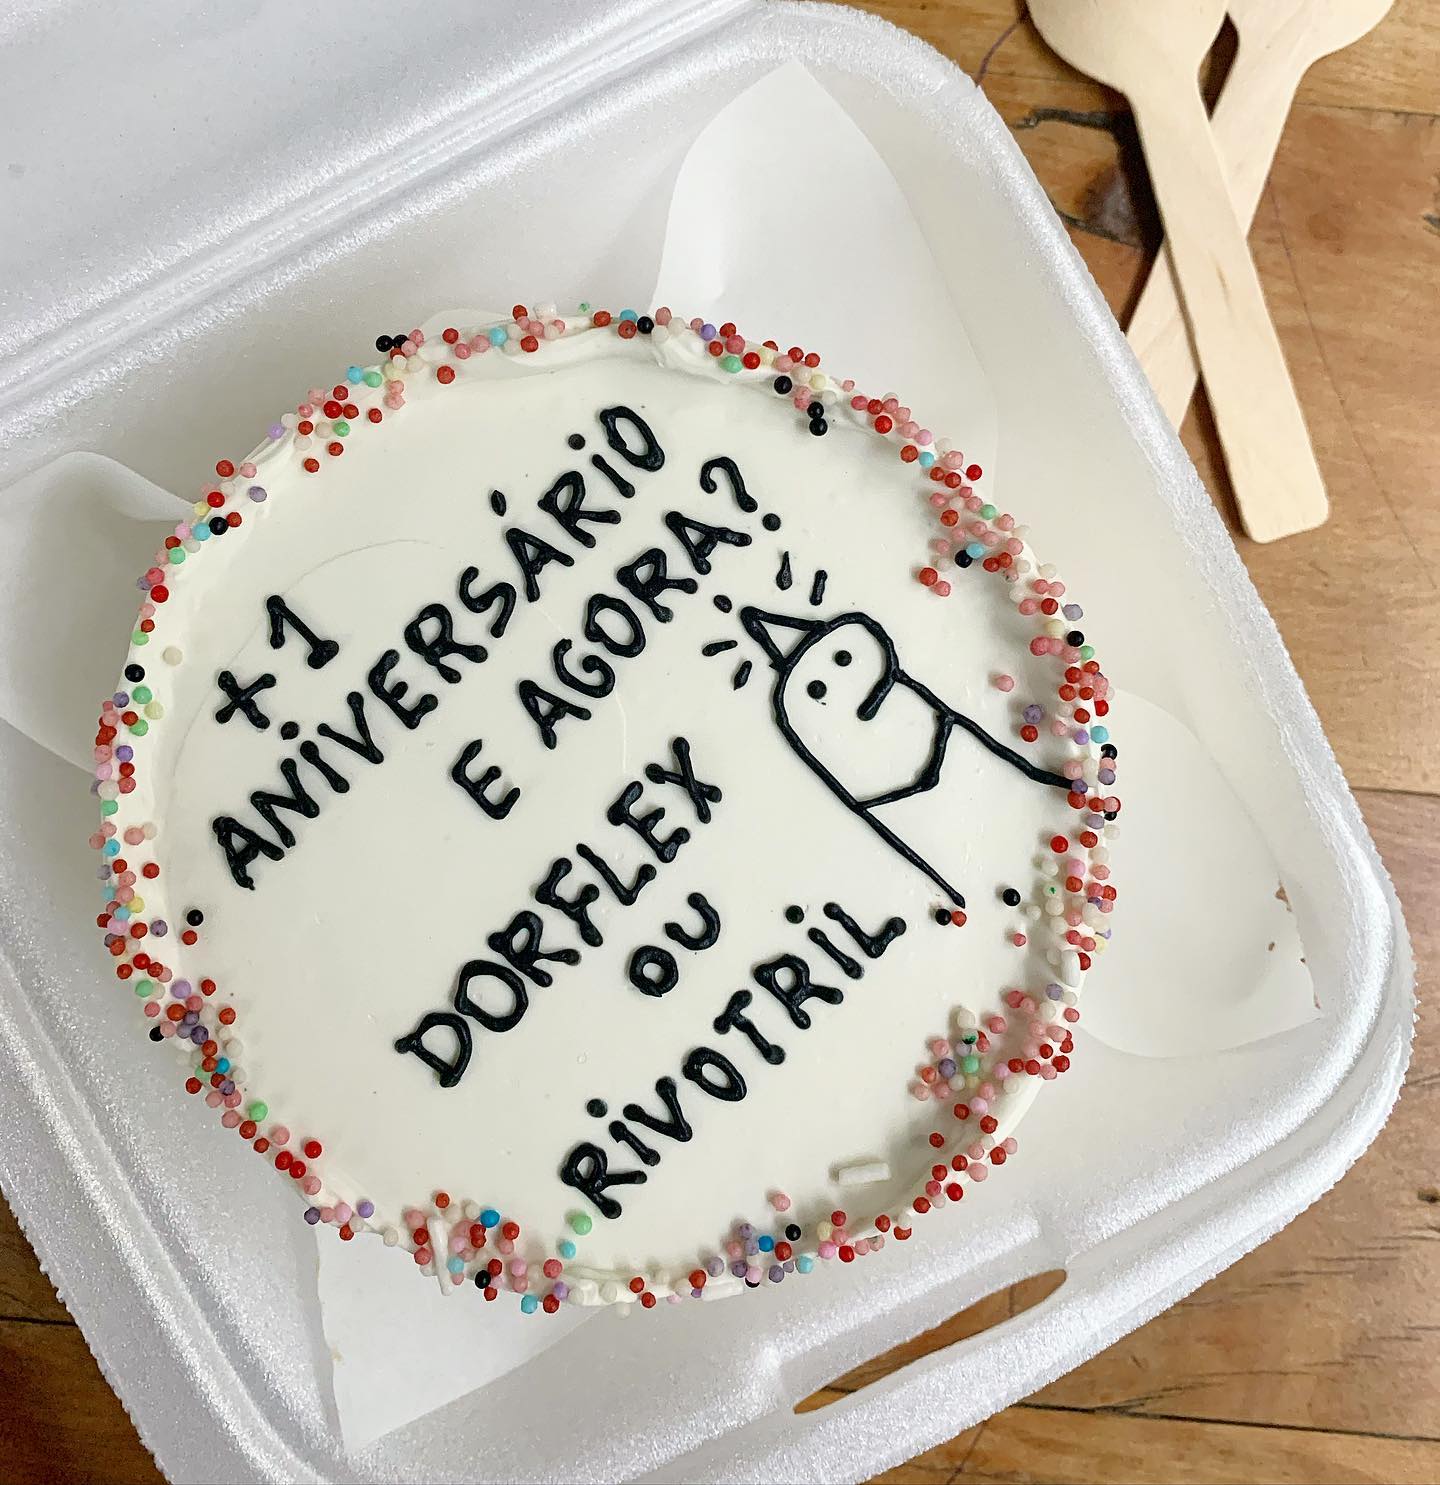 bento cake frases para aniversario 10